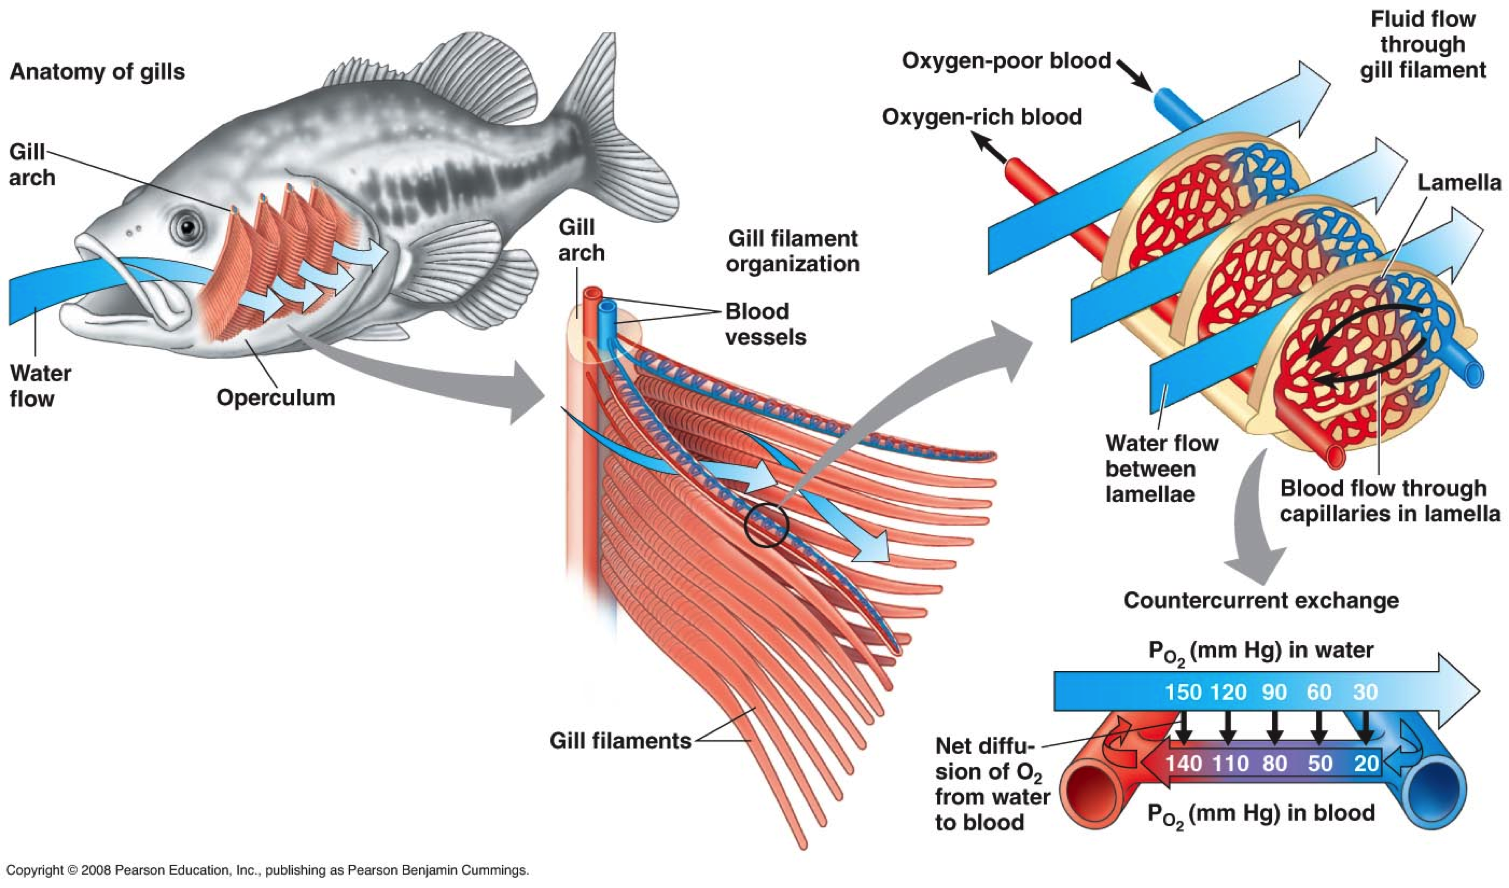 Жаберный аппарат костистой рыбы. Система органов дыхания рыб. Дыхательная система система рыб. Строение дыхательной системы рыб. Дыхание рыб в воде